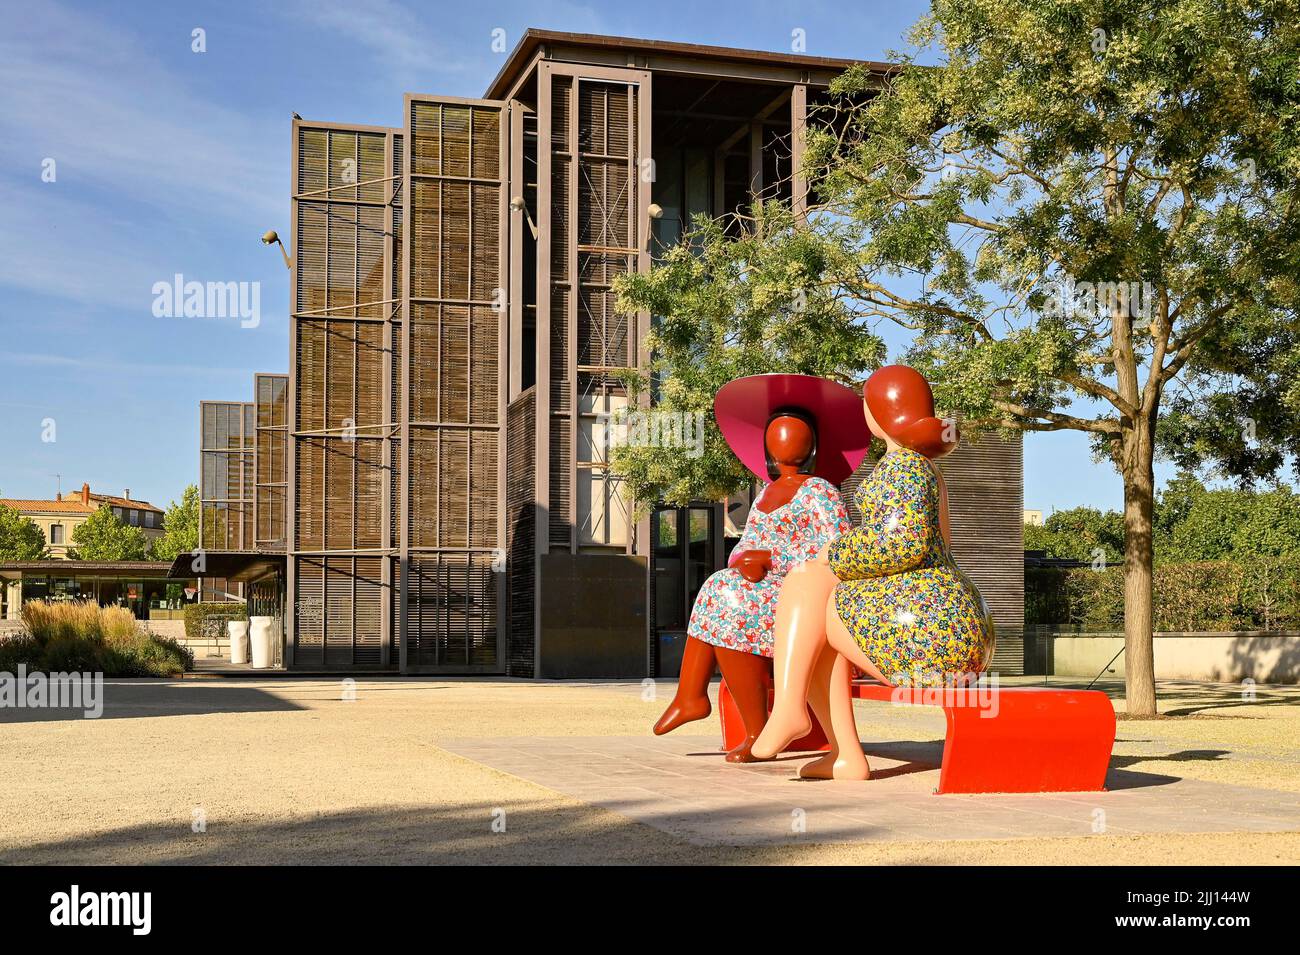 Les deux femmes (the two ladies), a sculpture by Franck Ayroles adorning  the Place de la Brèche in Niort, France Stock Photo - Alamy